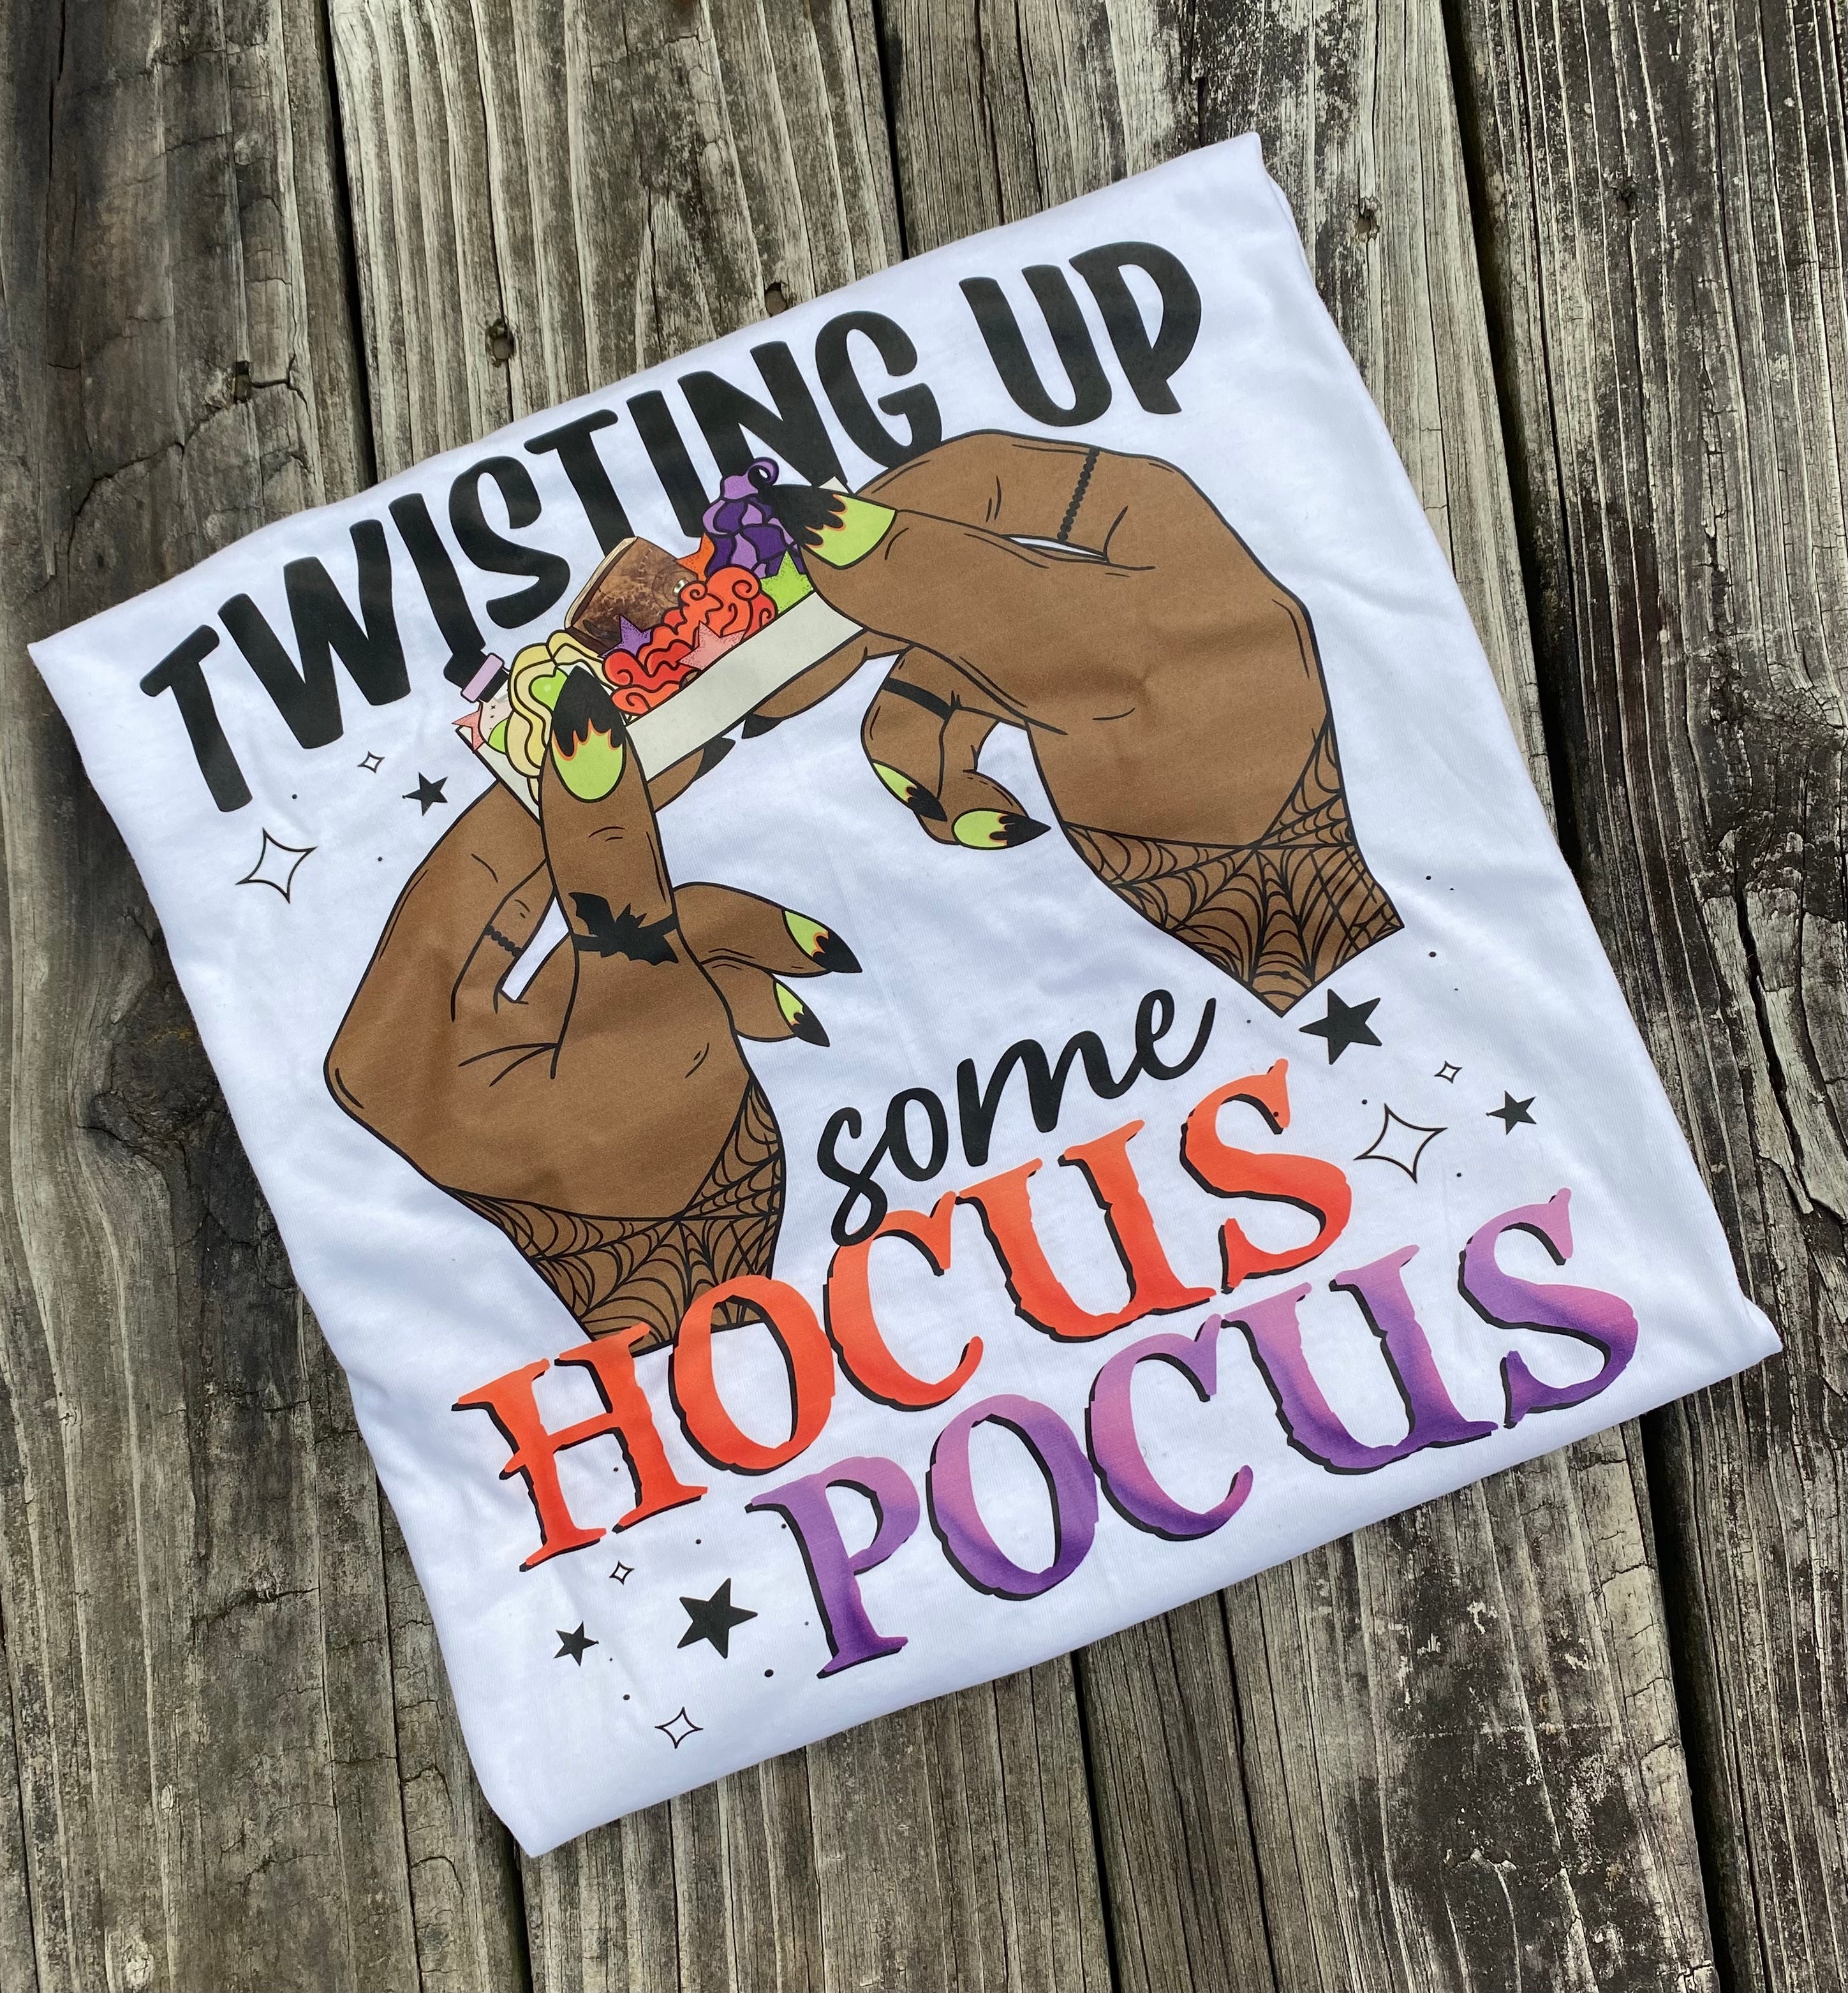 Twisting Up Some Hocus Pocus